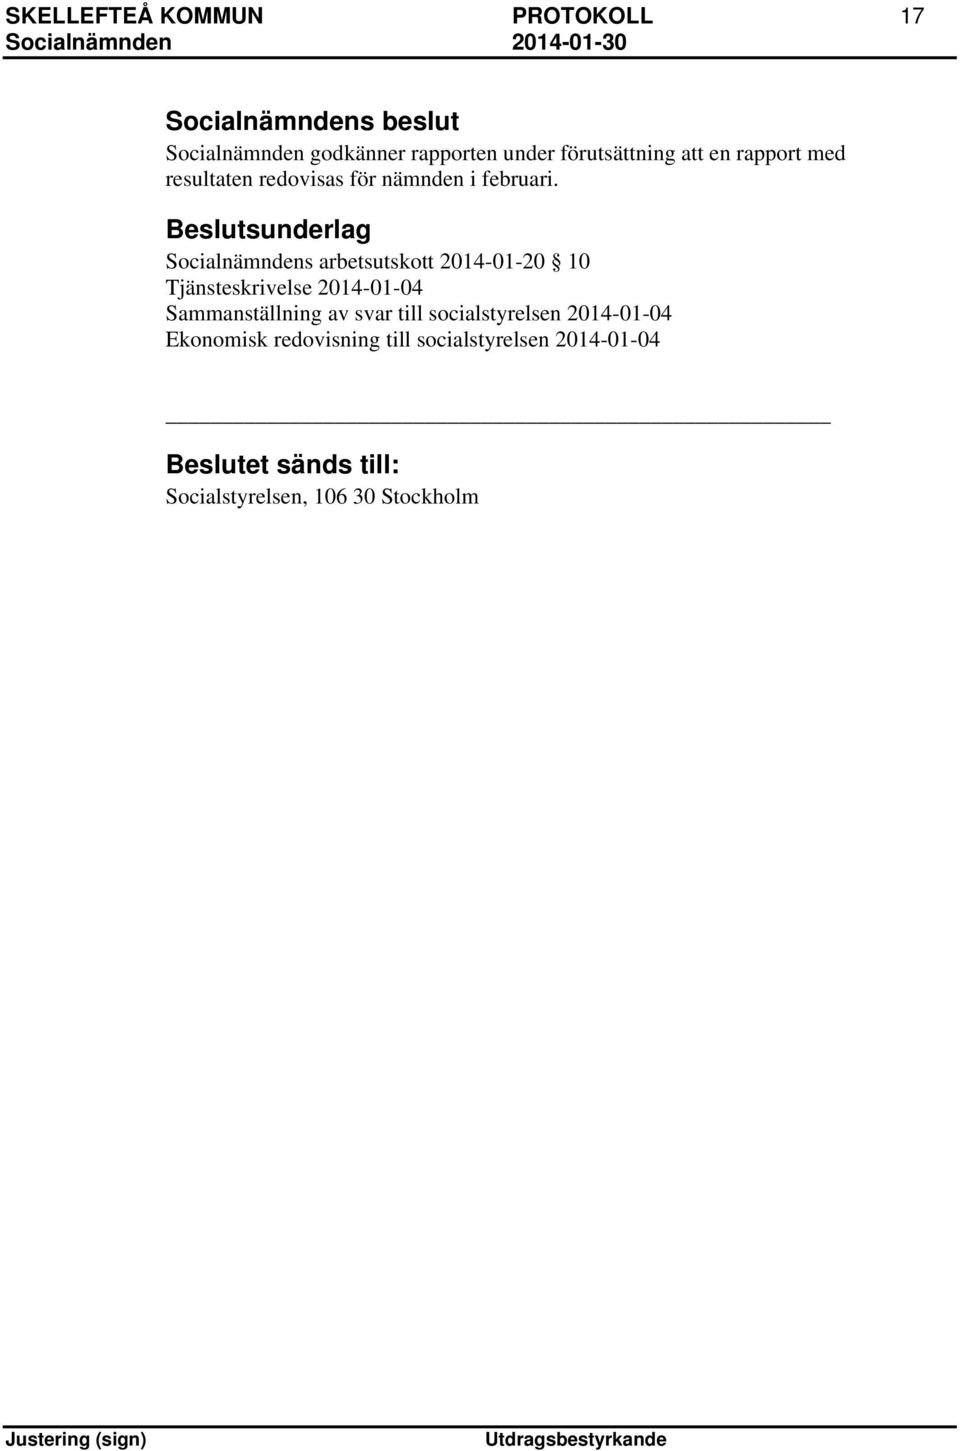 Beslutsunderlag Socialnämndens arbetsutskott 2014-01-20 10 Tjänsteskrivelse 2014-01-04 Sammanställning av